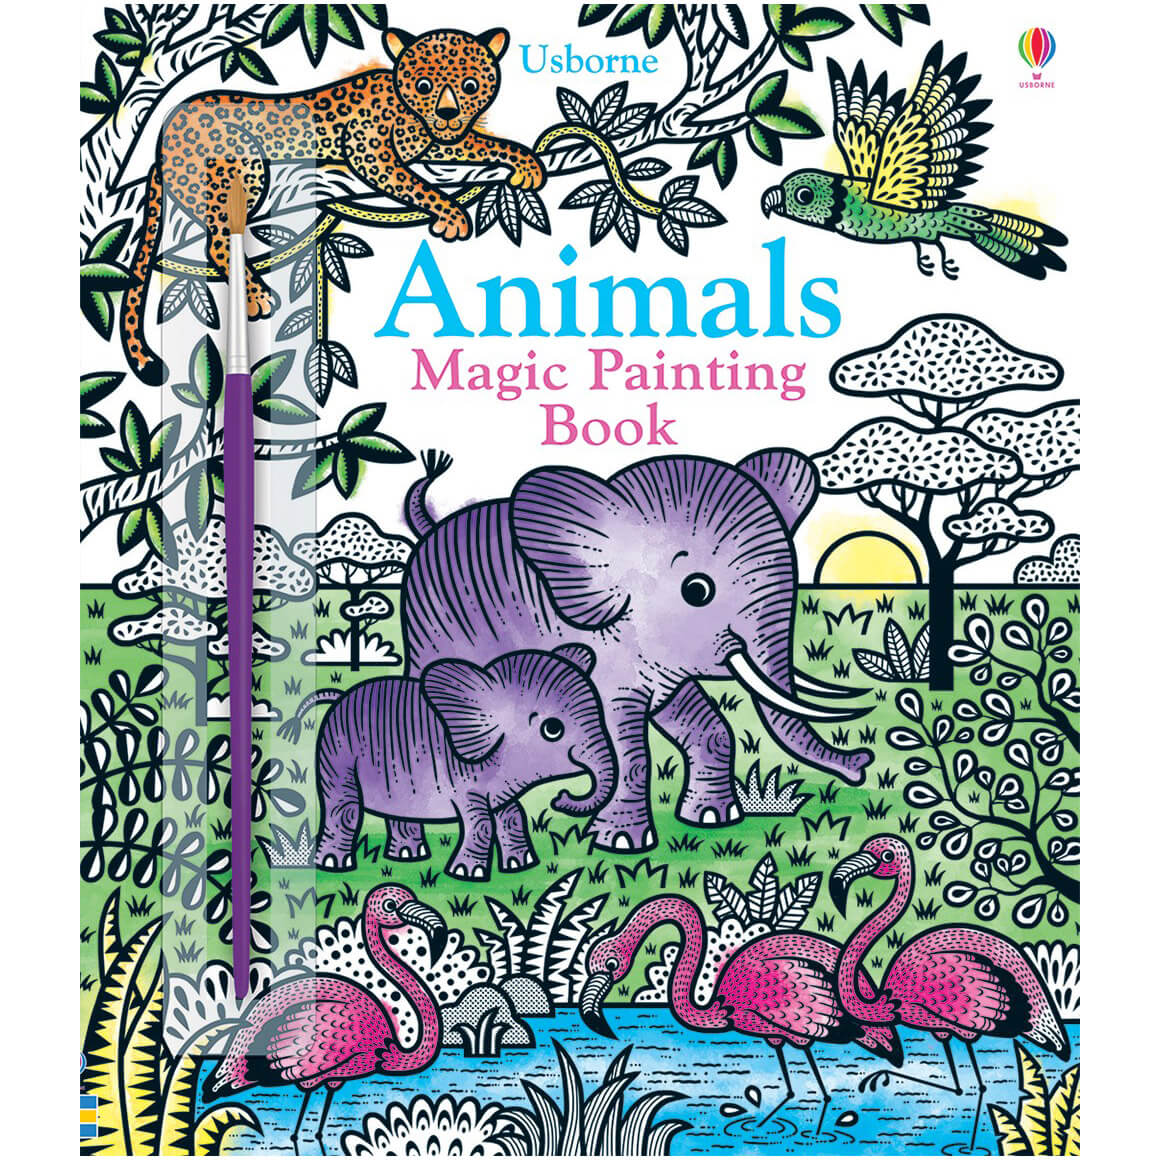 Usborne Magic Painting Book Animals (Magic Painting Books)